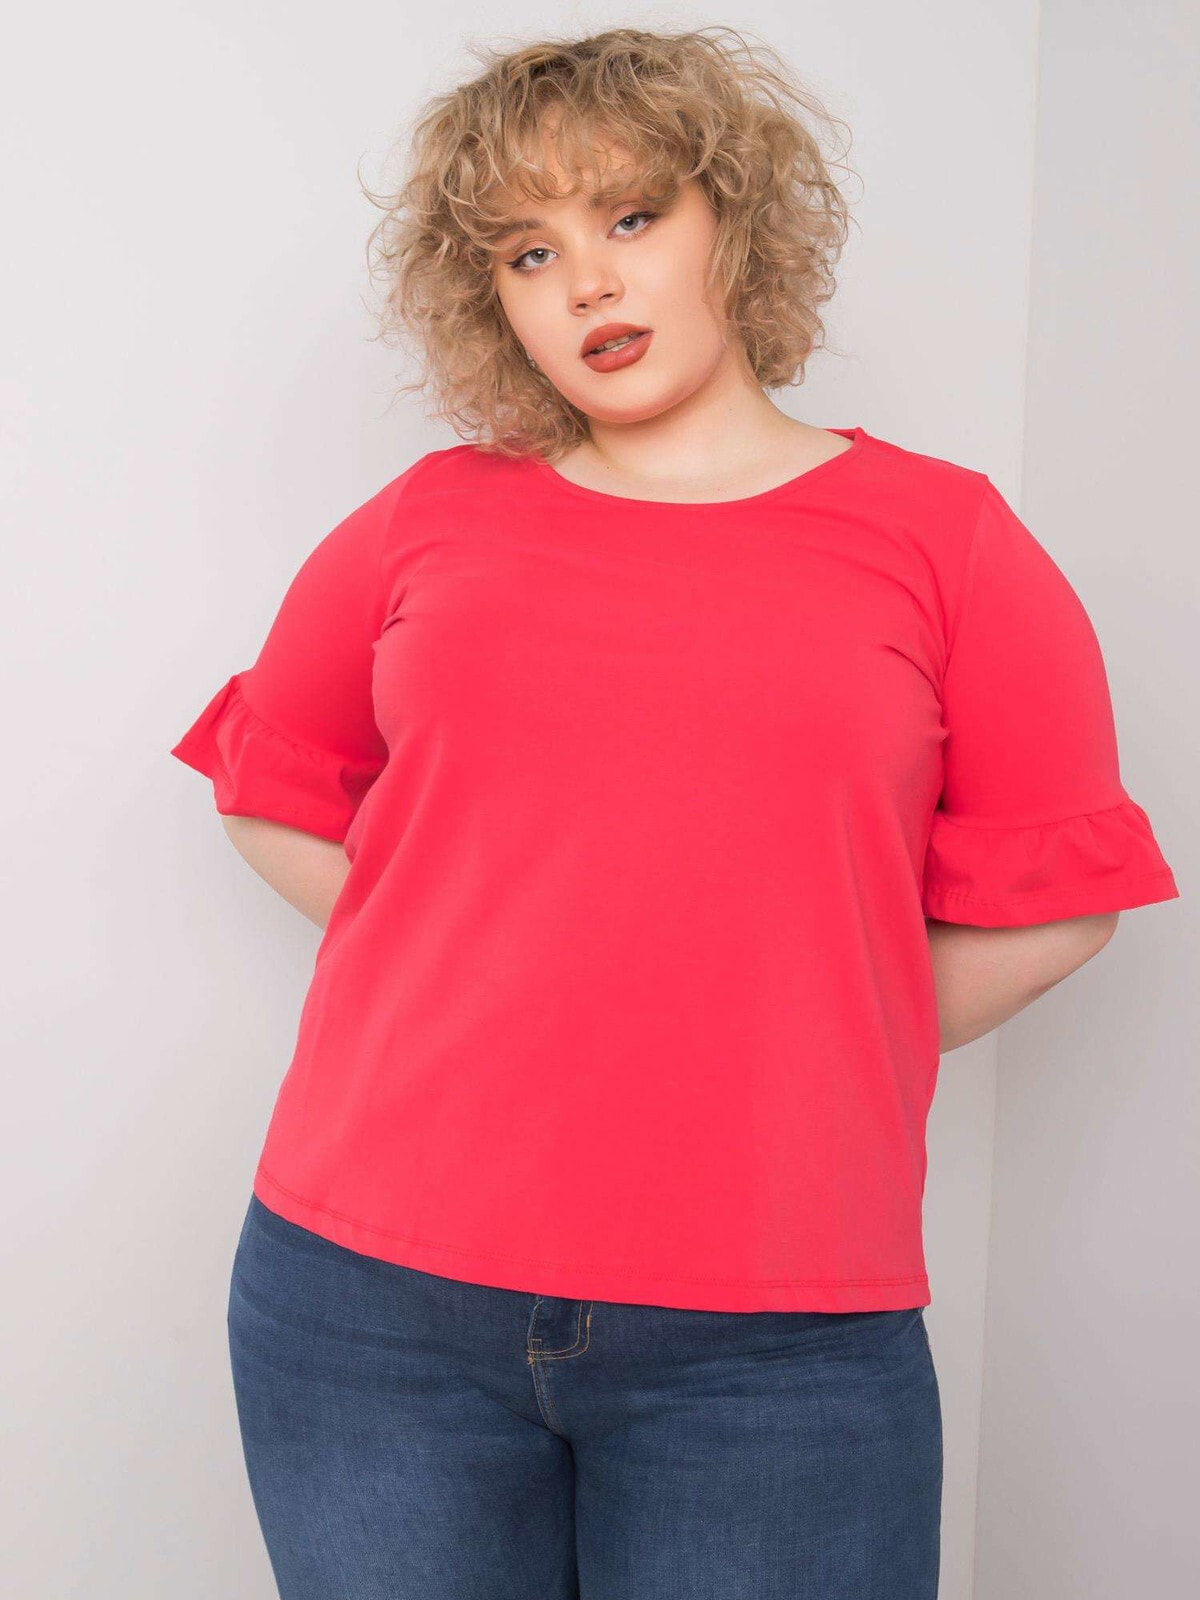 Женская блузка свободного кроя с коротким рукавом красная Factory Price